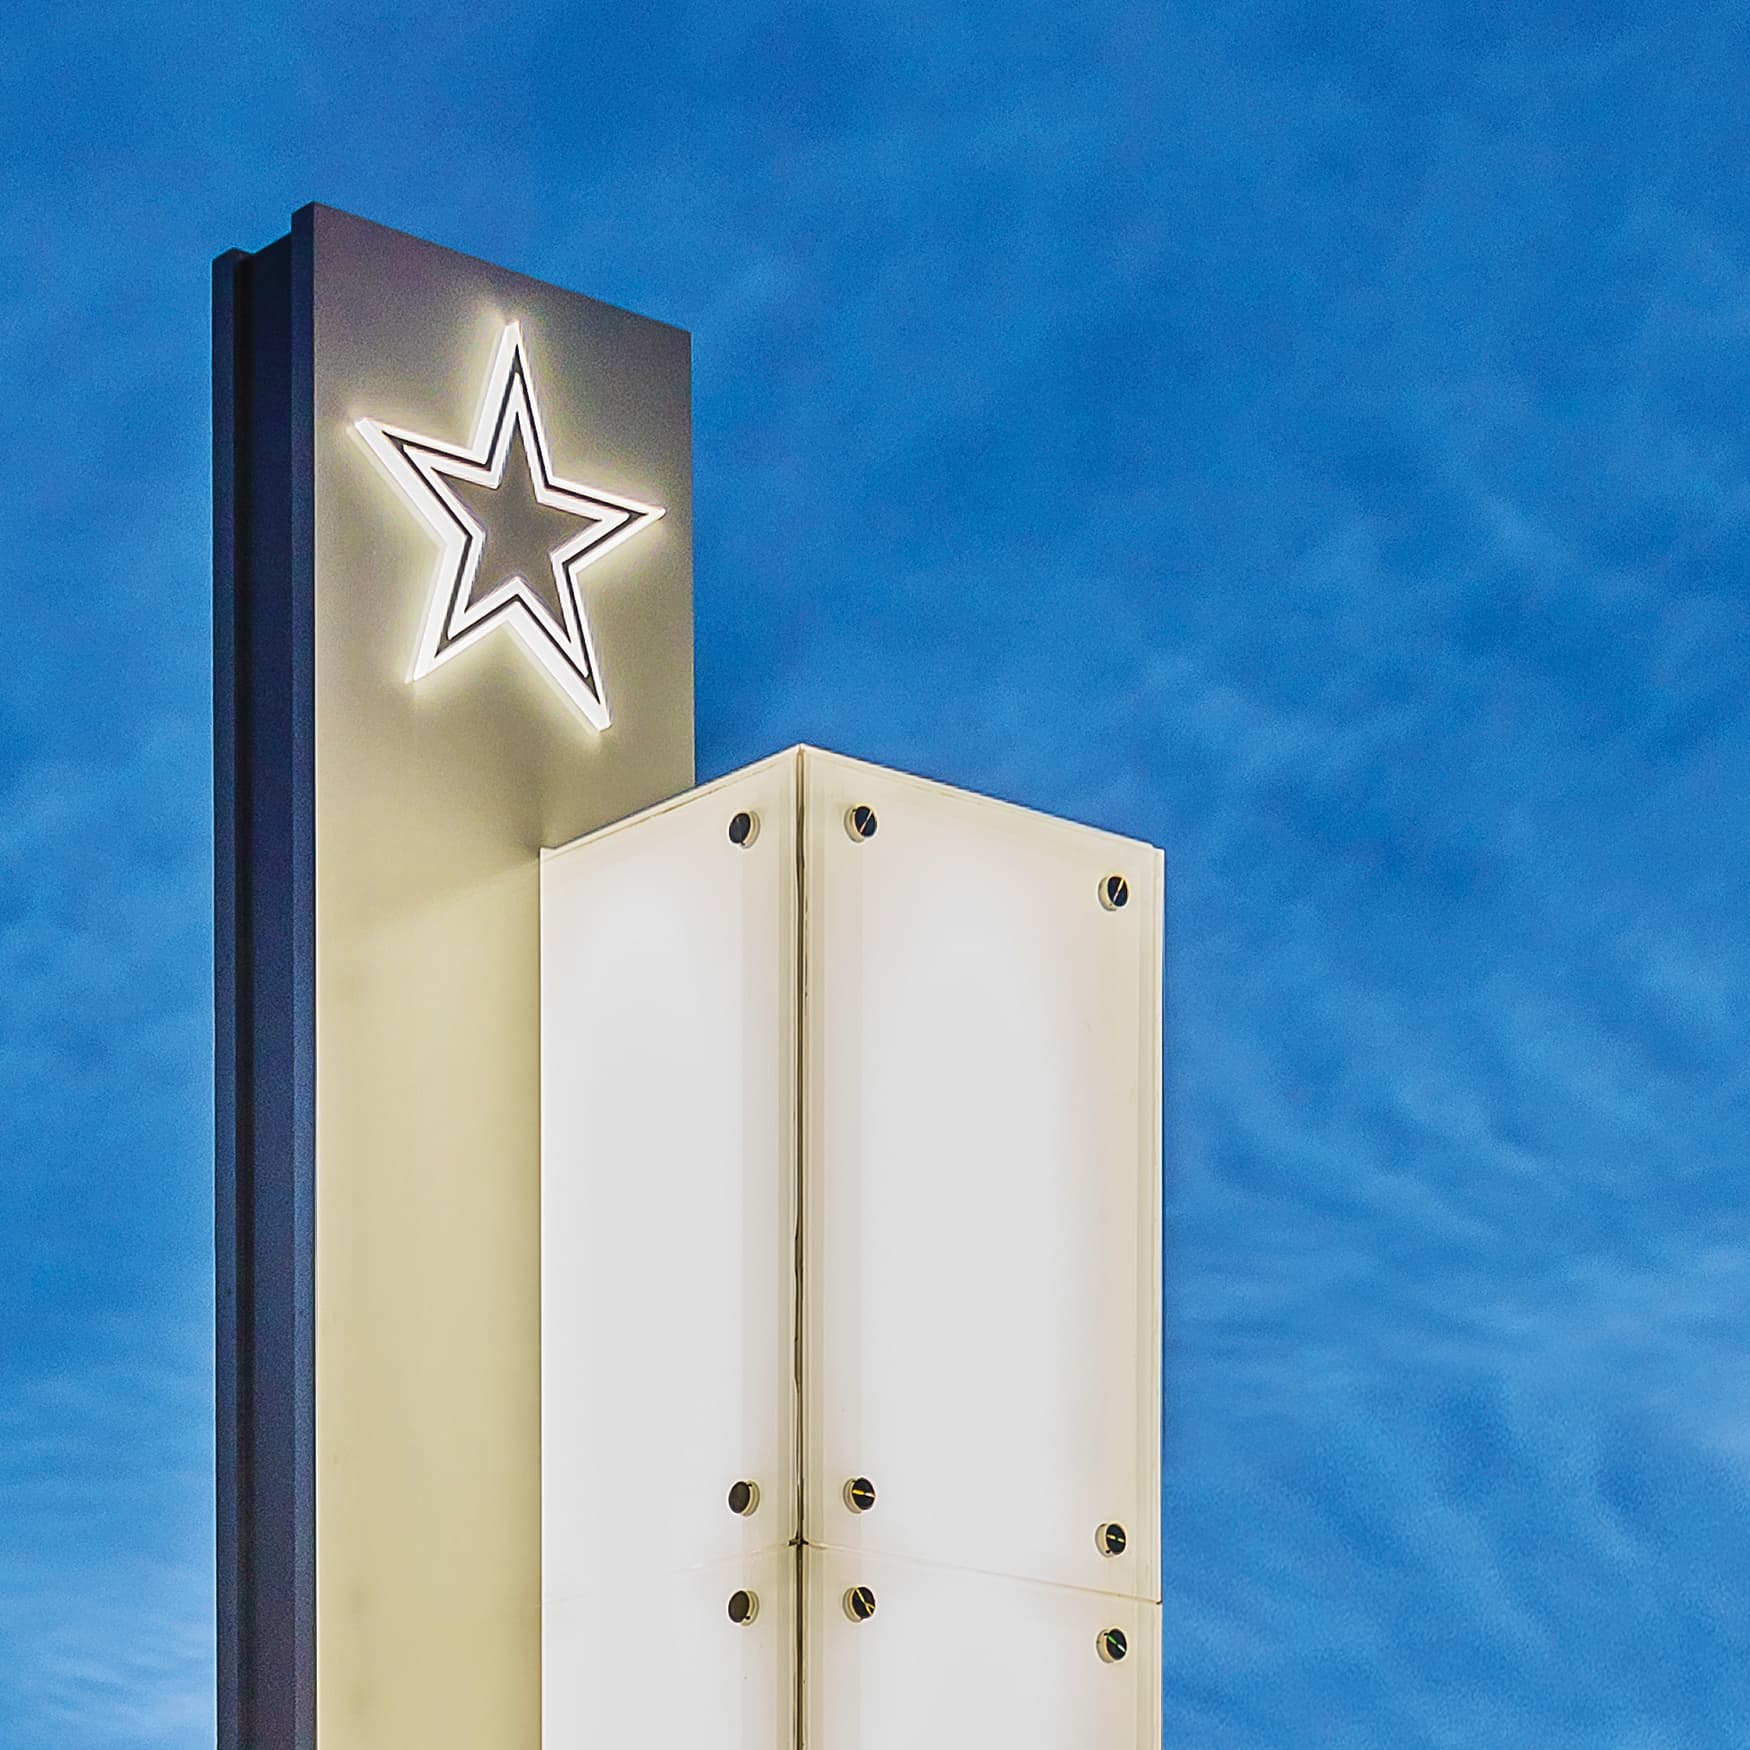 Dallas Cowboys logo illuminated pylon signage at dusk